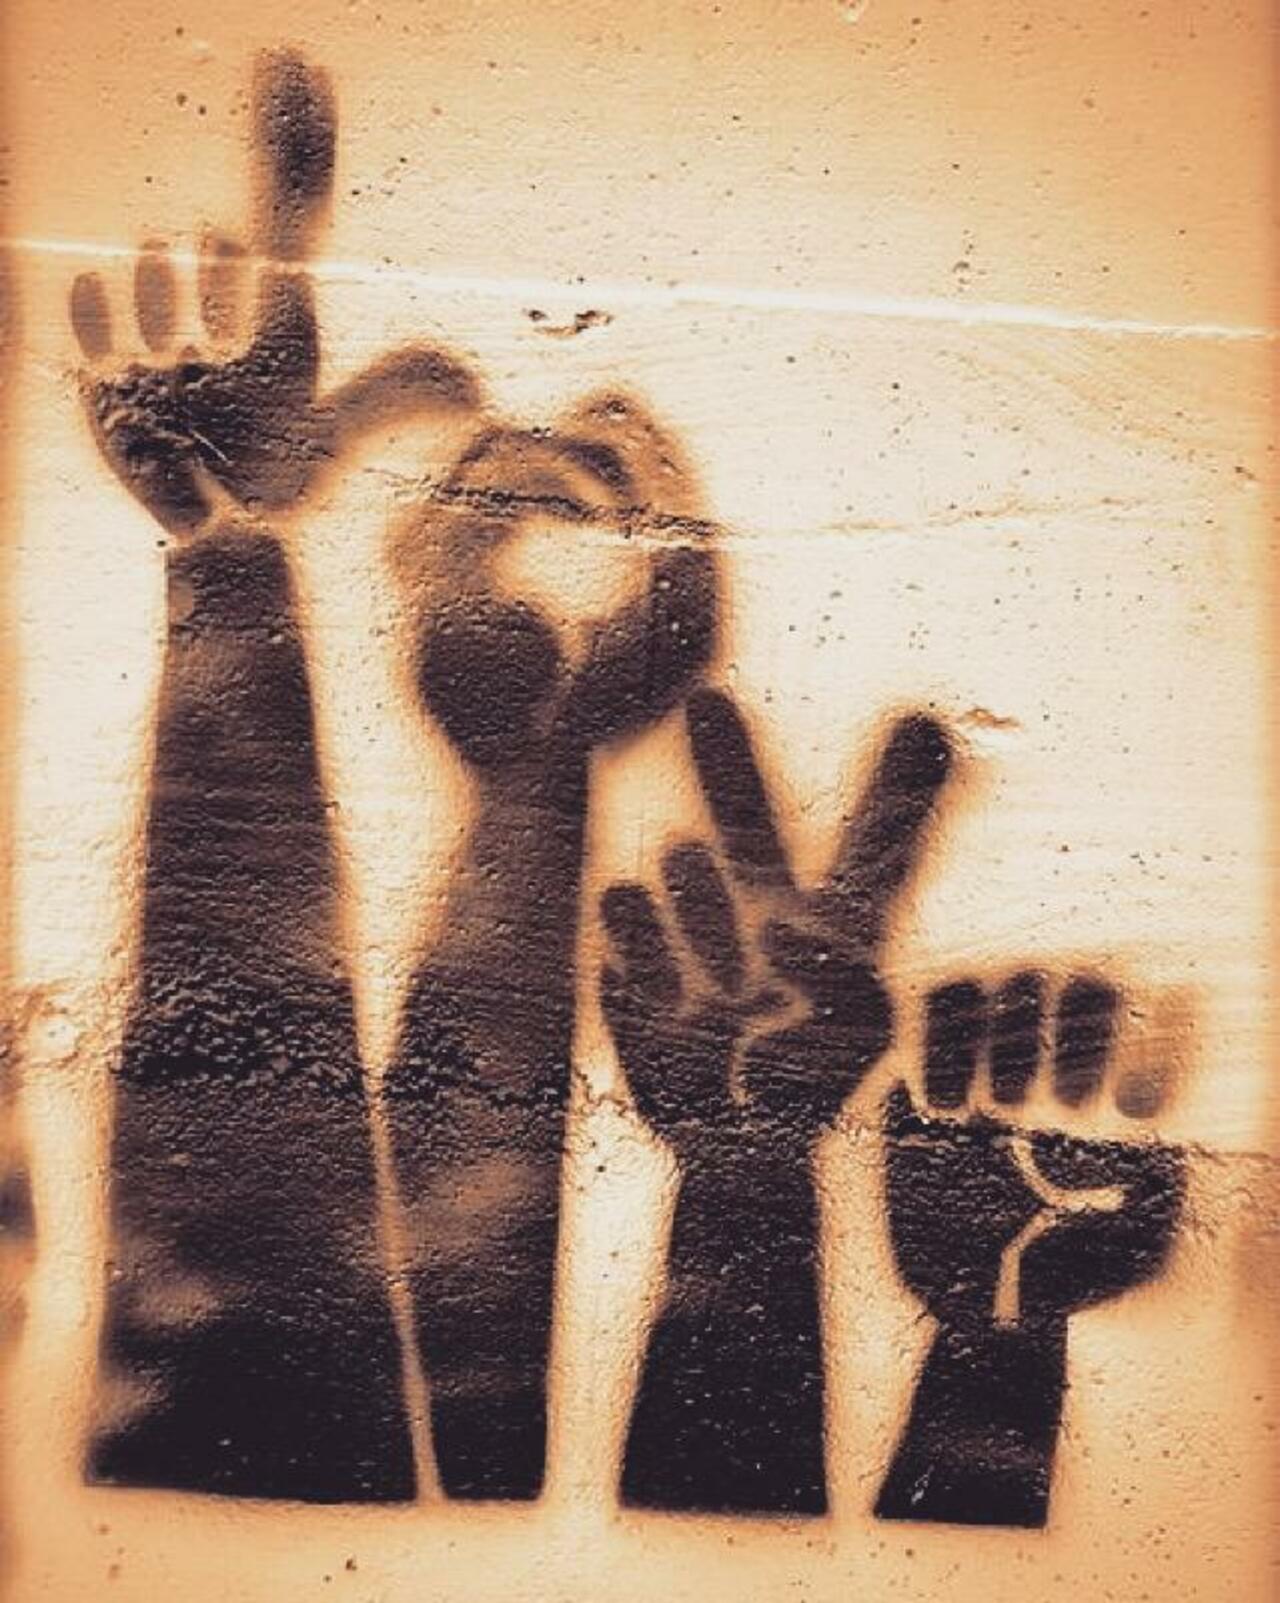 RT @simbihaiti: L-O-V-E  #streetart #graffiti #simbimoment #simbihaiti #signlanguage #love #bethedifference  http://t.co/1LcLOm3OH2